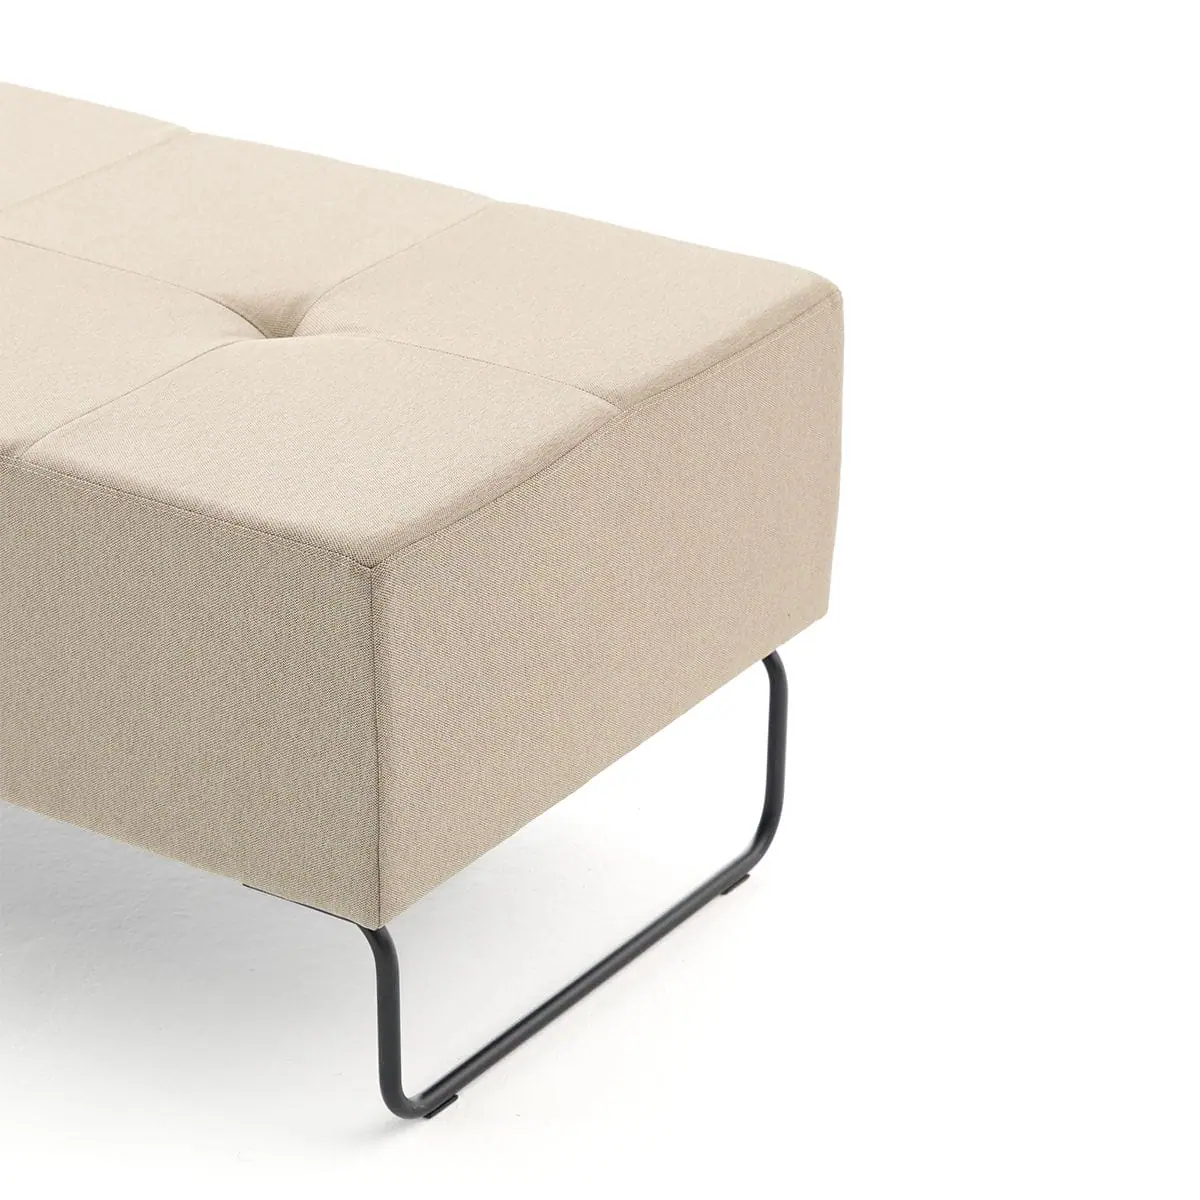 delaoliva-etna-soft-lounge-seating-008